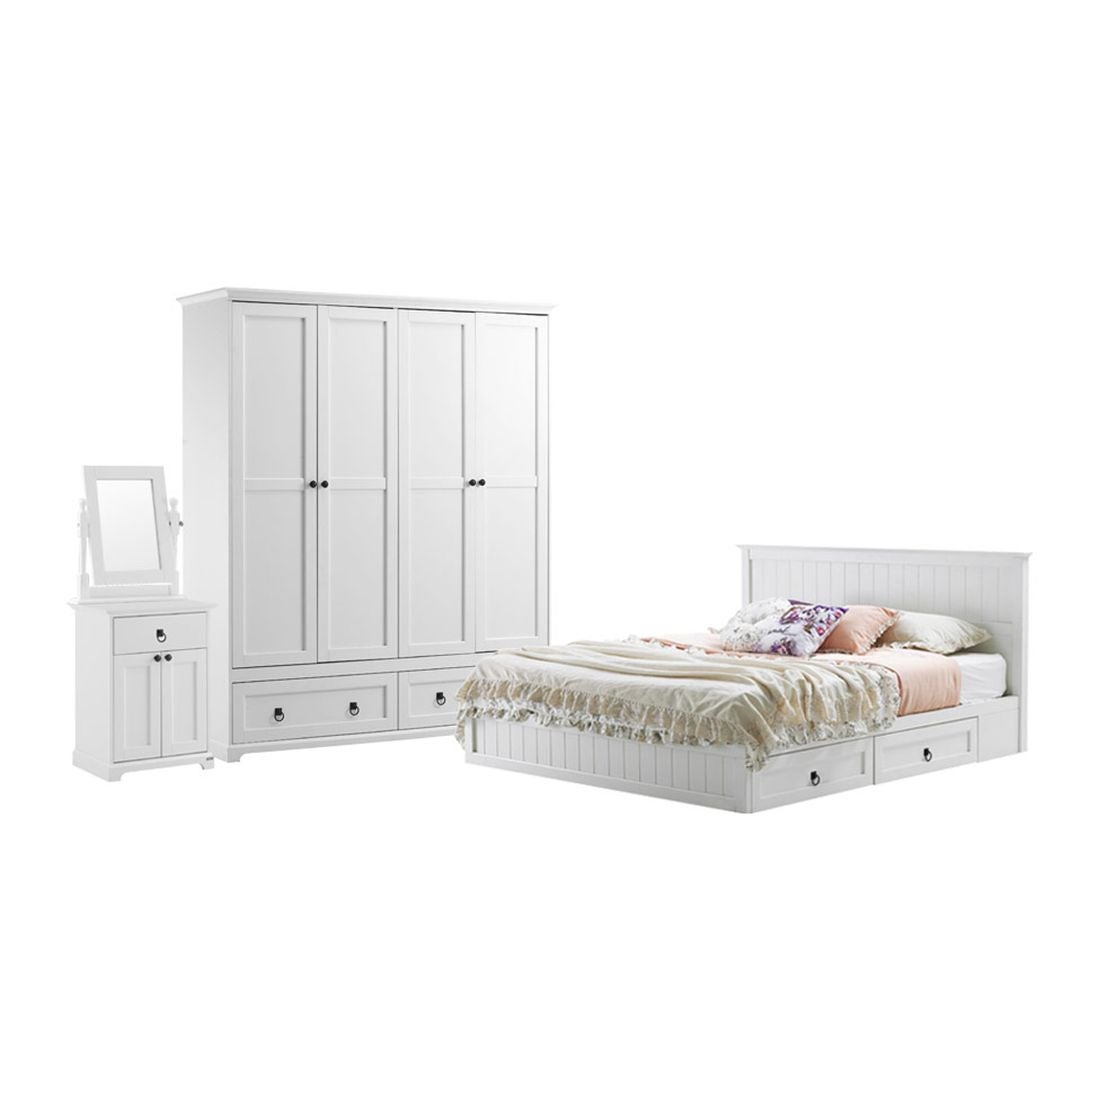 ชุดห้องนอน ชุดห้องนอนขนาด 6 ฟุต รุ่น Melona สีสีขาว-SB Design Square